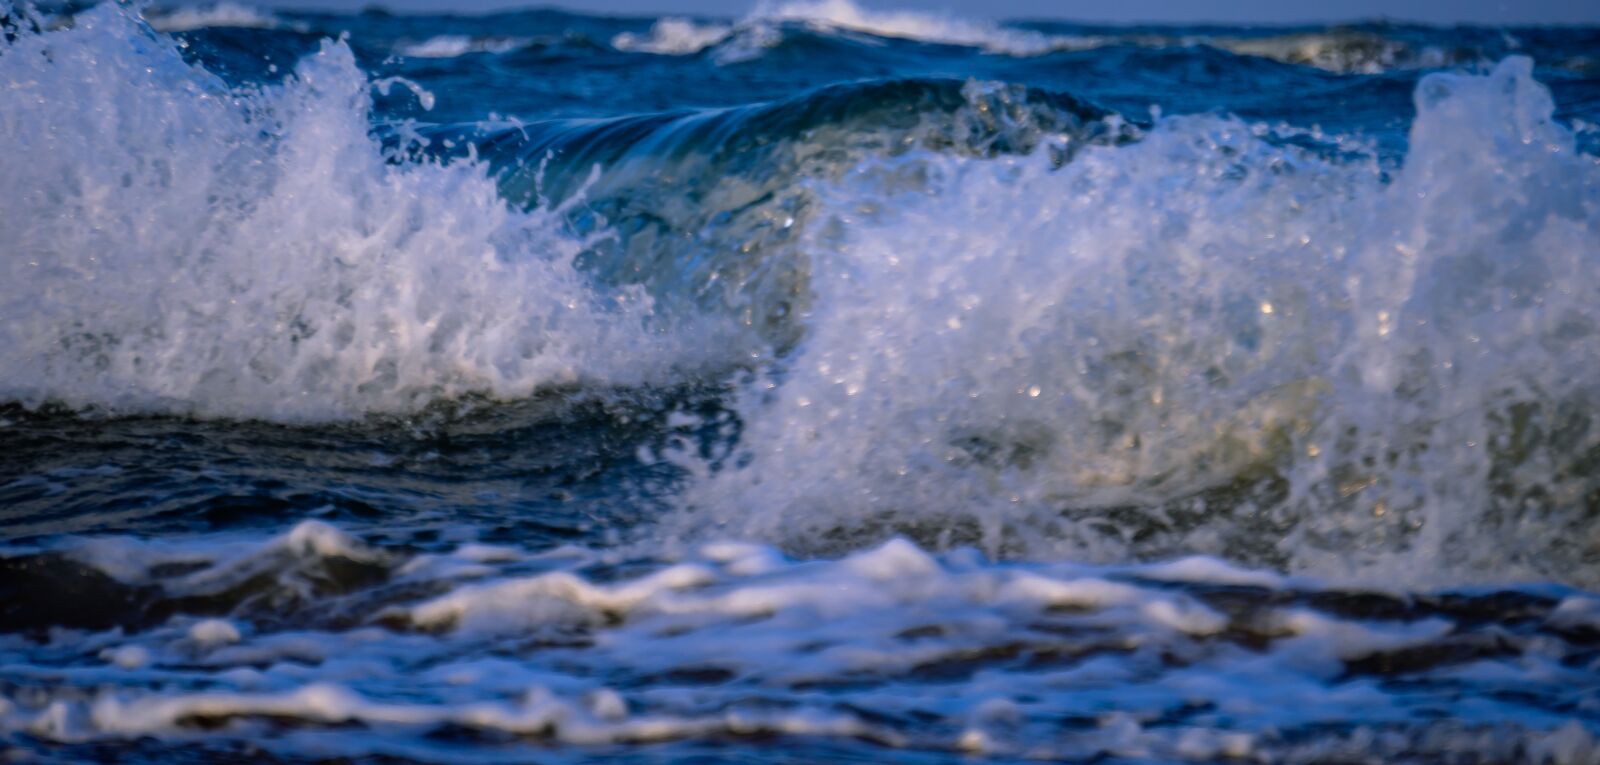 Sony a6400 + Sony E 55-210mm F4.5-6.3 OSS sample photo. Sea, ocean, beach photography